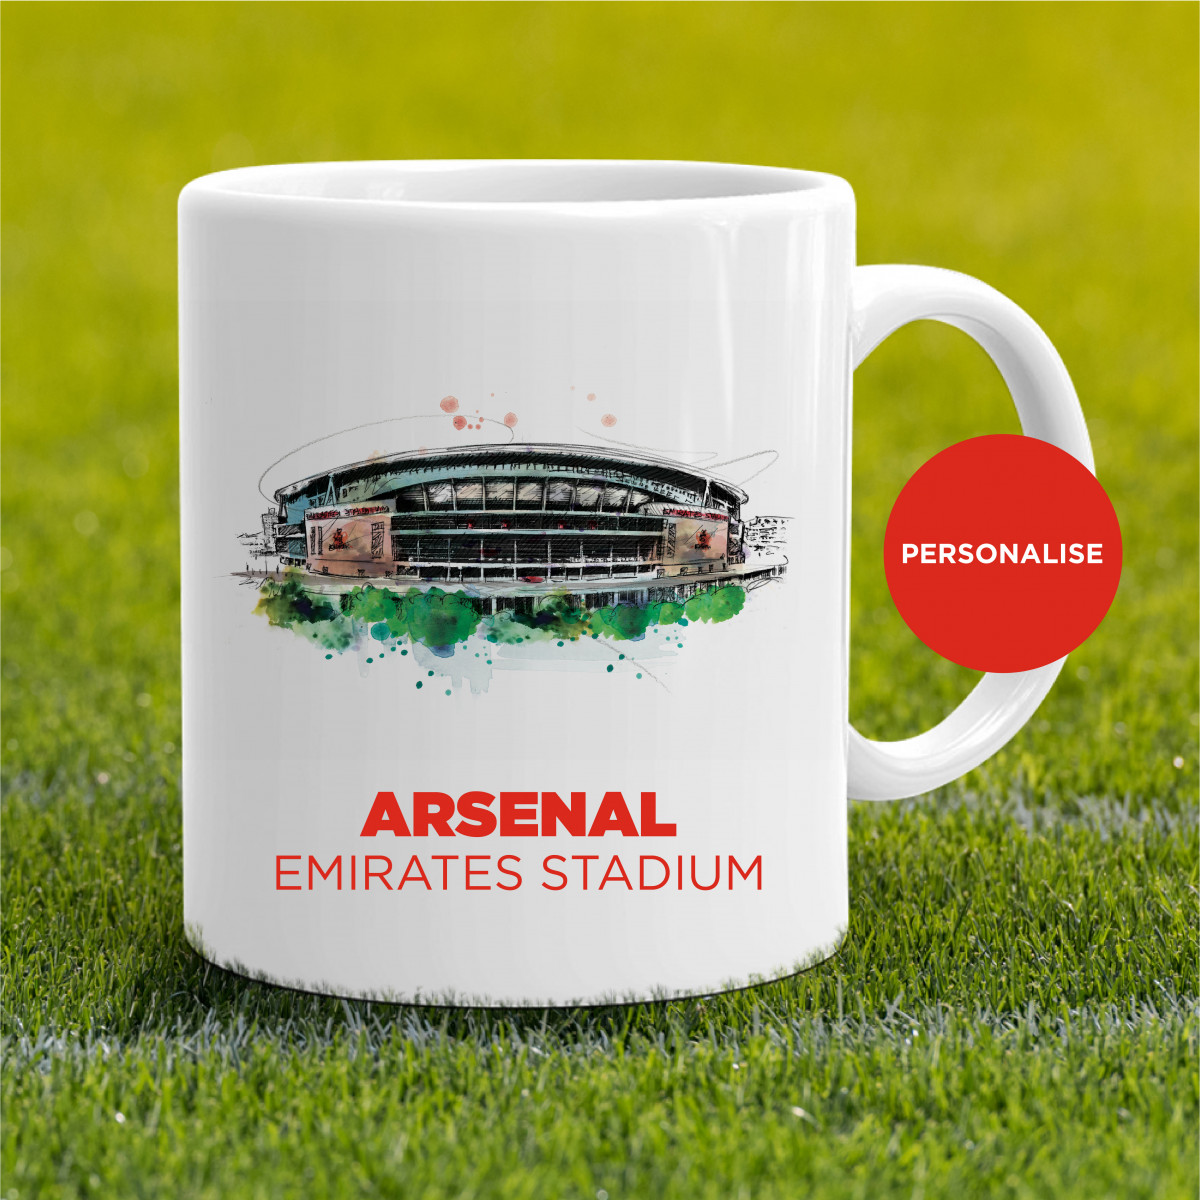 Arsenal - Ermirates Stadium, personalised Mug